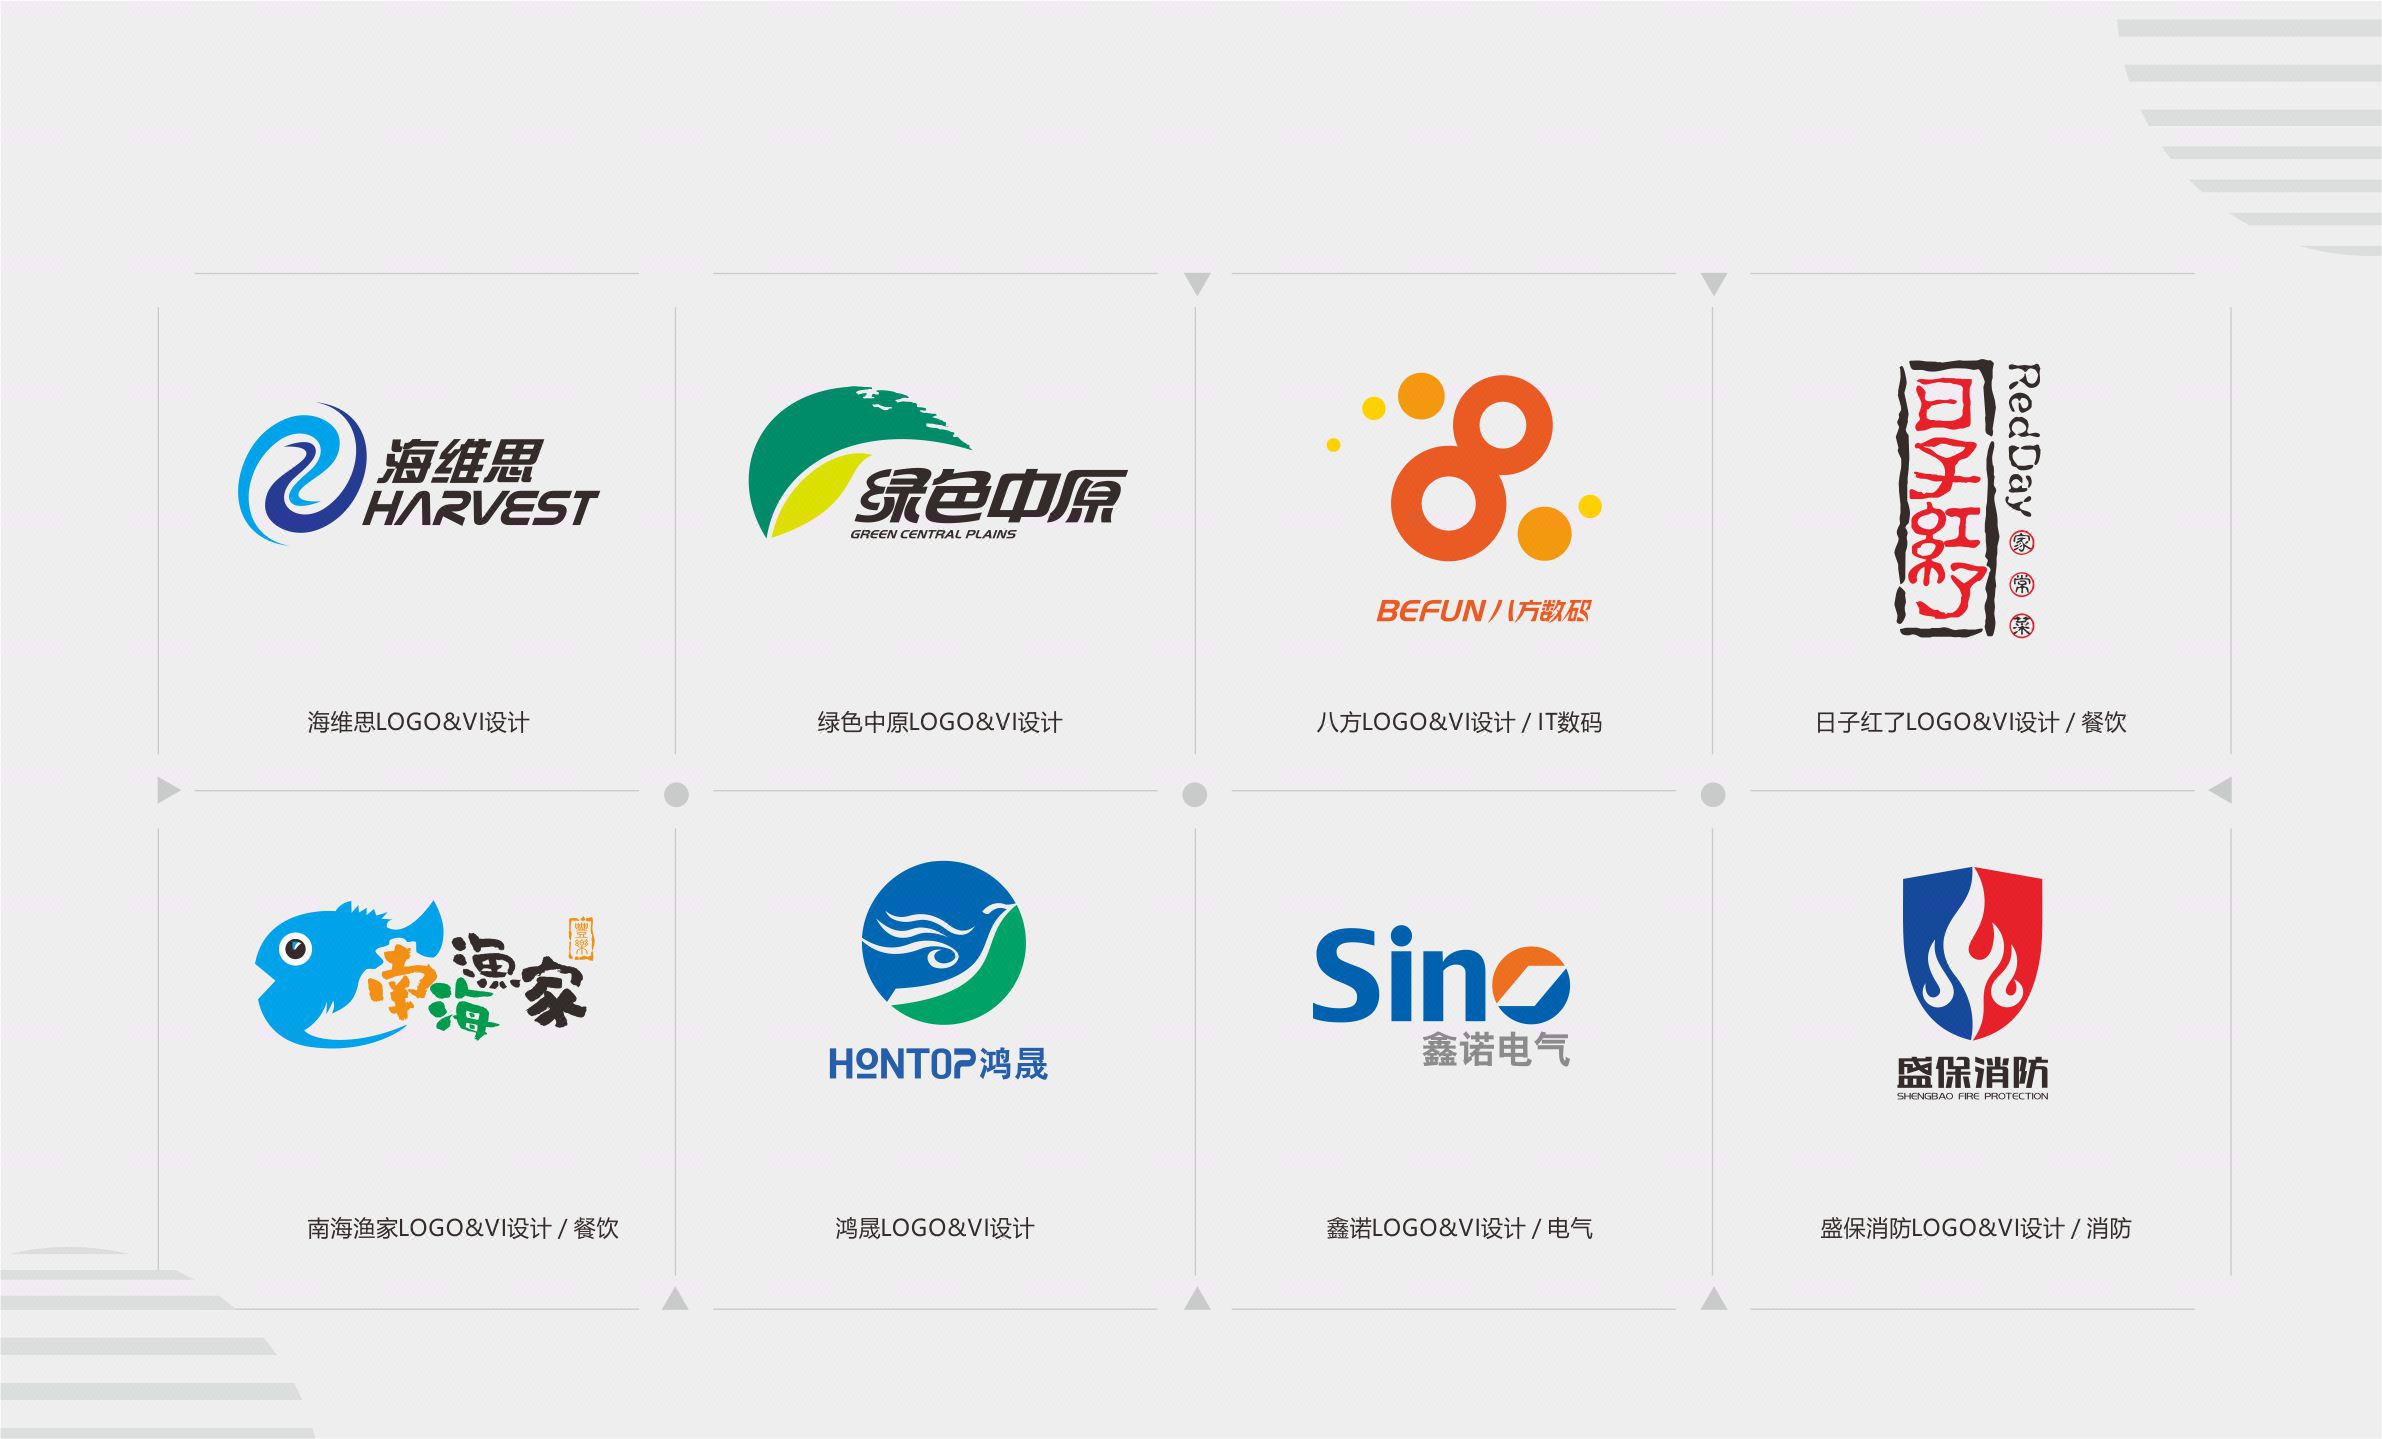 企业/协会,产品/品牌,活动组织 颜色:彩色系,黑白系 风格:中国风logo